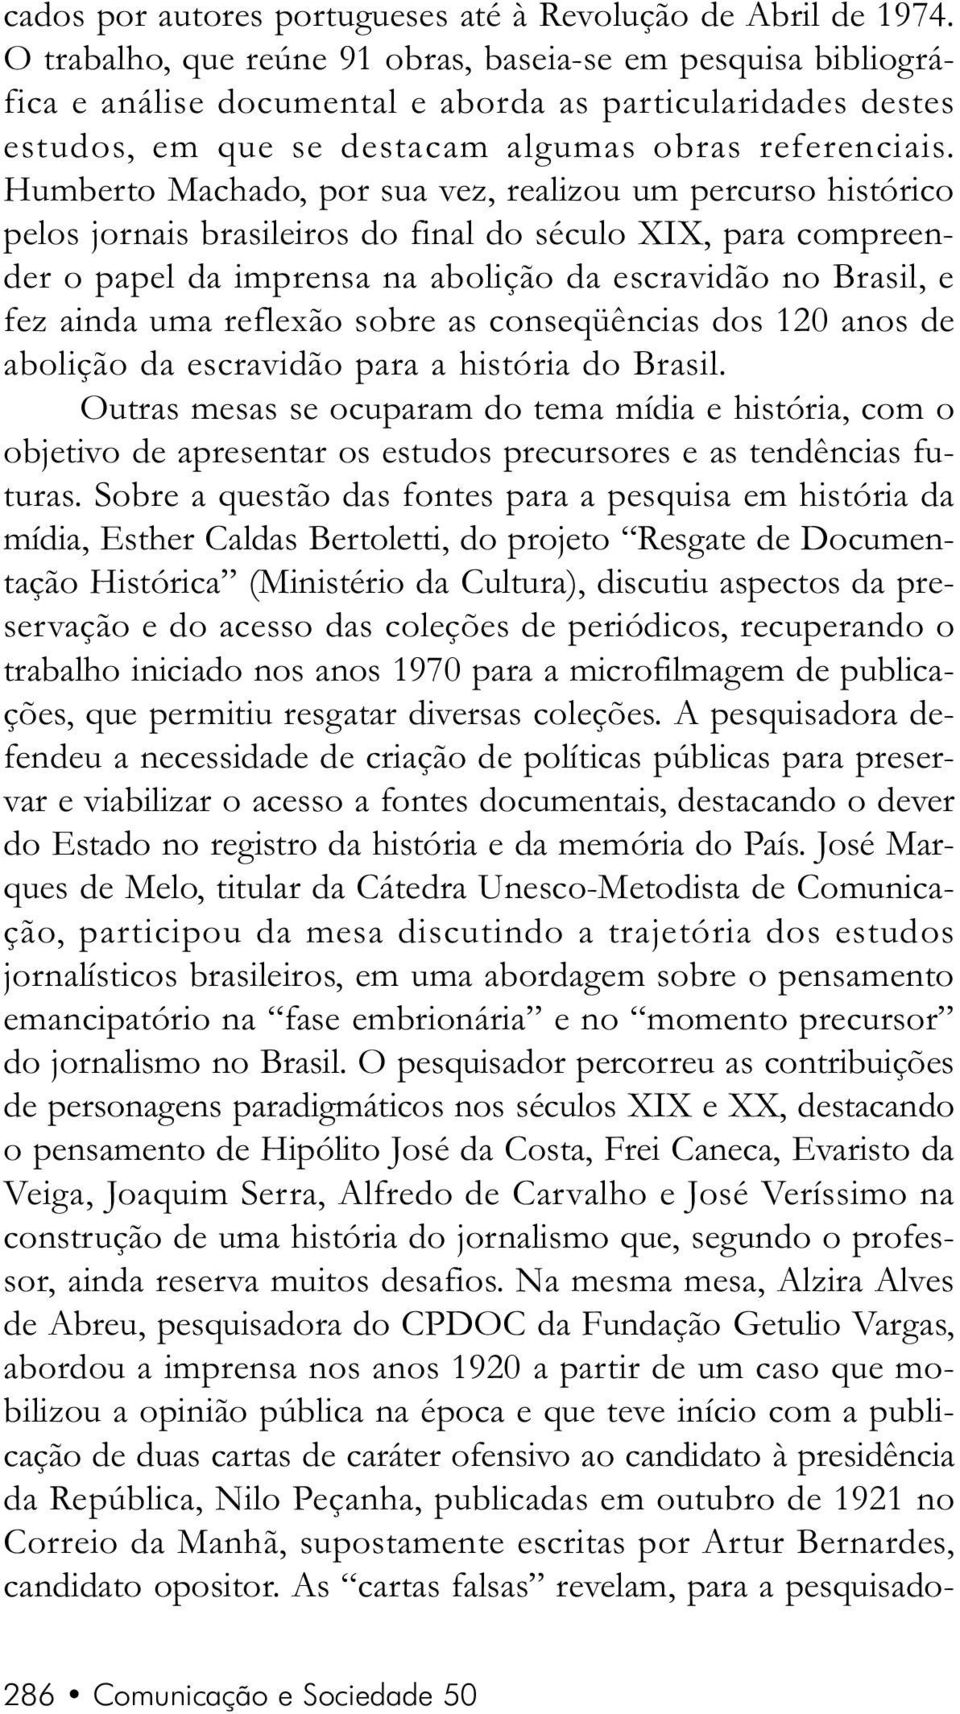 Humberto Machado, por sua vez, realizou um percurso histórico pelos jornais brasileiros do final do século XIX, para compreender o papel da imprensa na abolição da escravidão no Brasil, e fez ainda